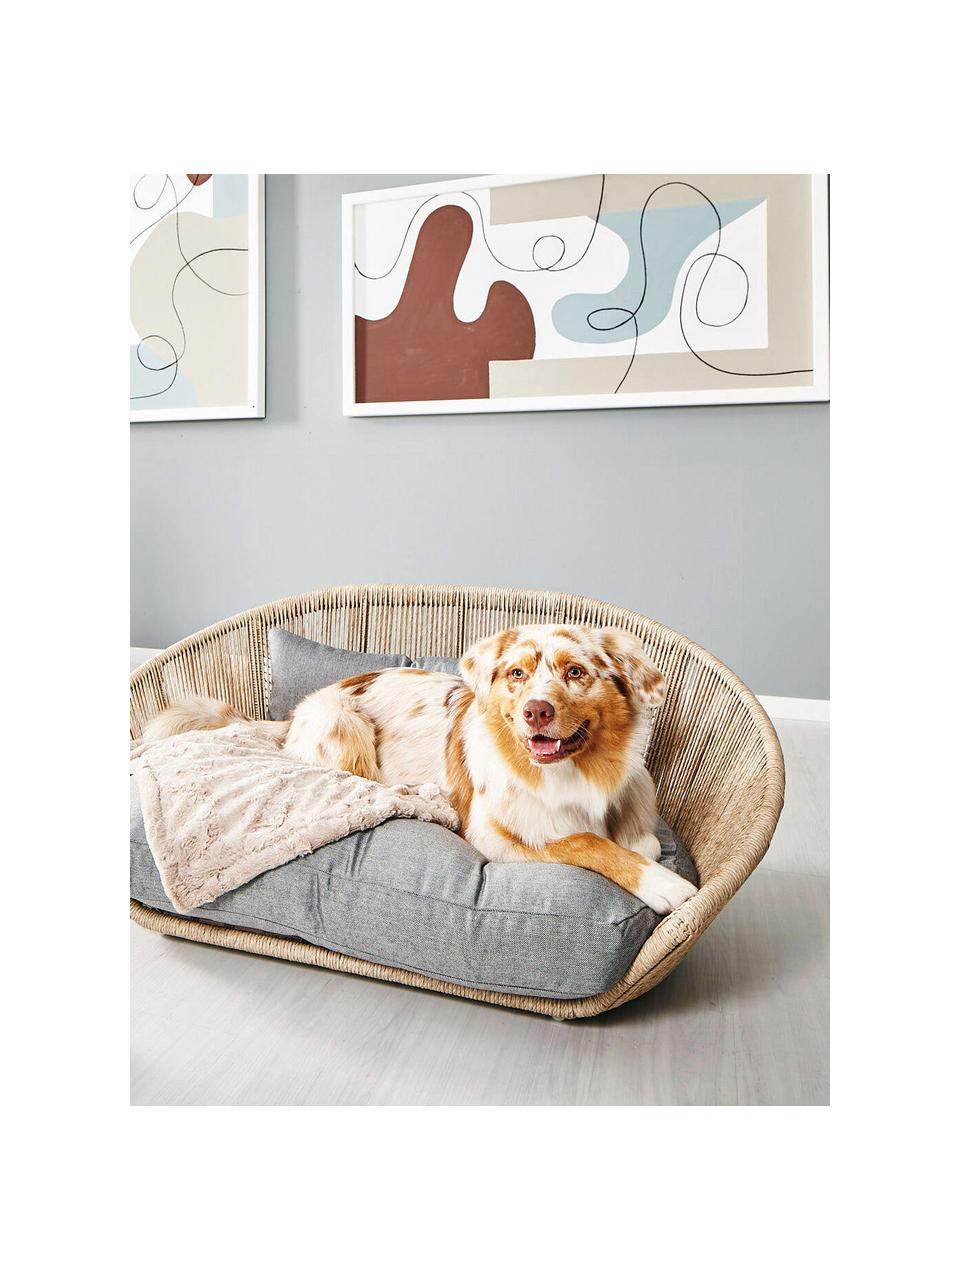 Interiérový/exteriérový pelíšek pro psy Vogue, Světle šedá, béžová, Š 110 cm, H 74 cm